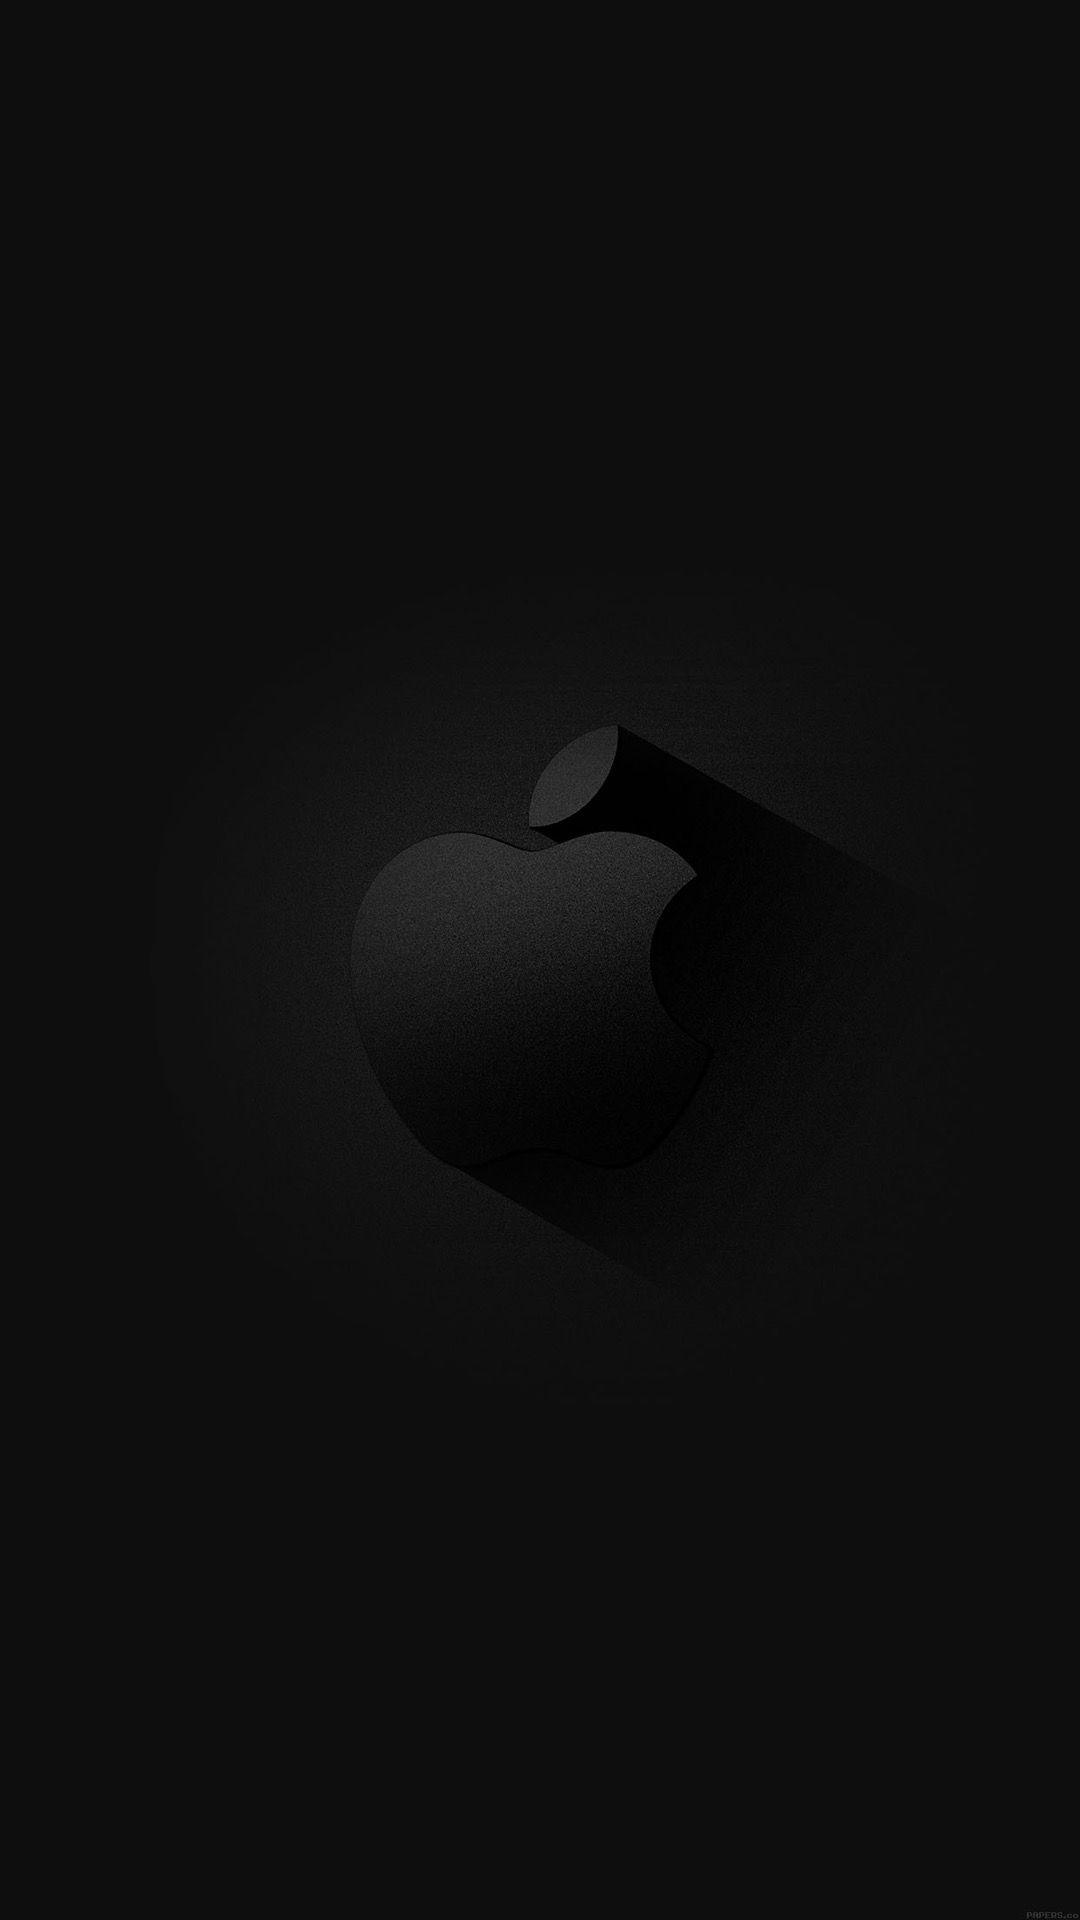 Black Apple iPhone wallpaper. iPhone Wallpaper（画像あり）. 黒